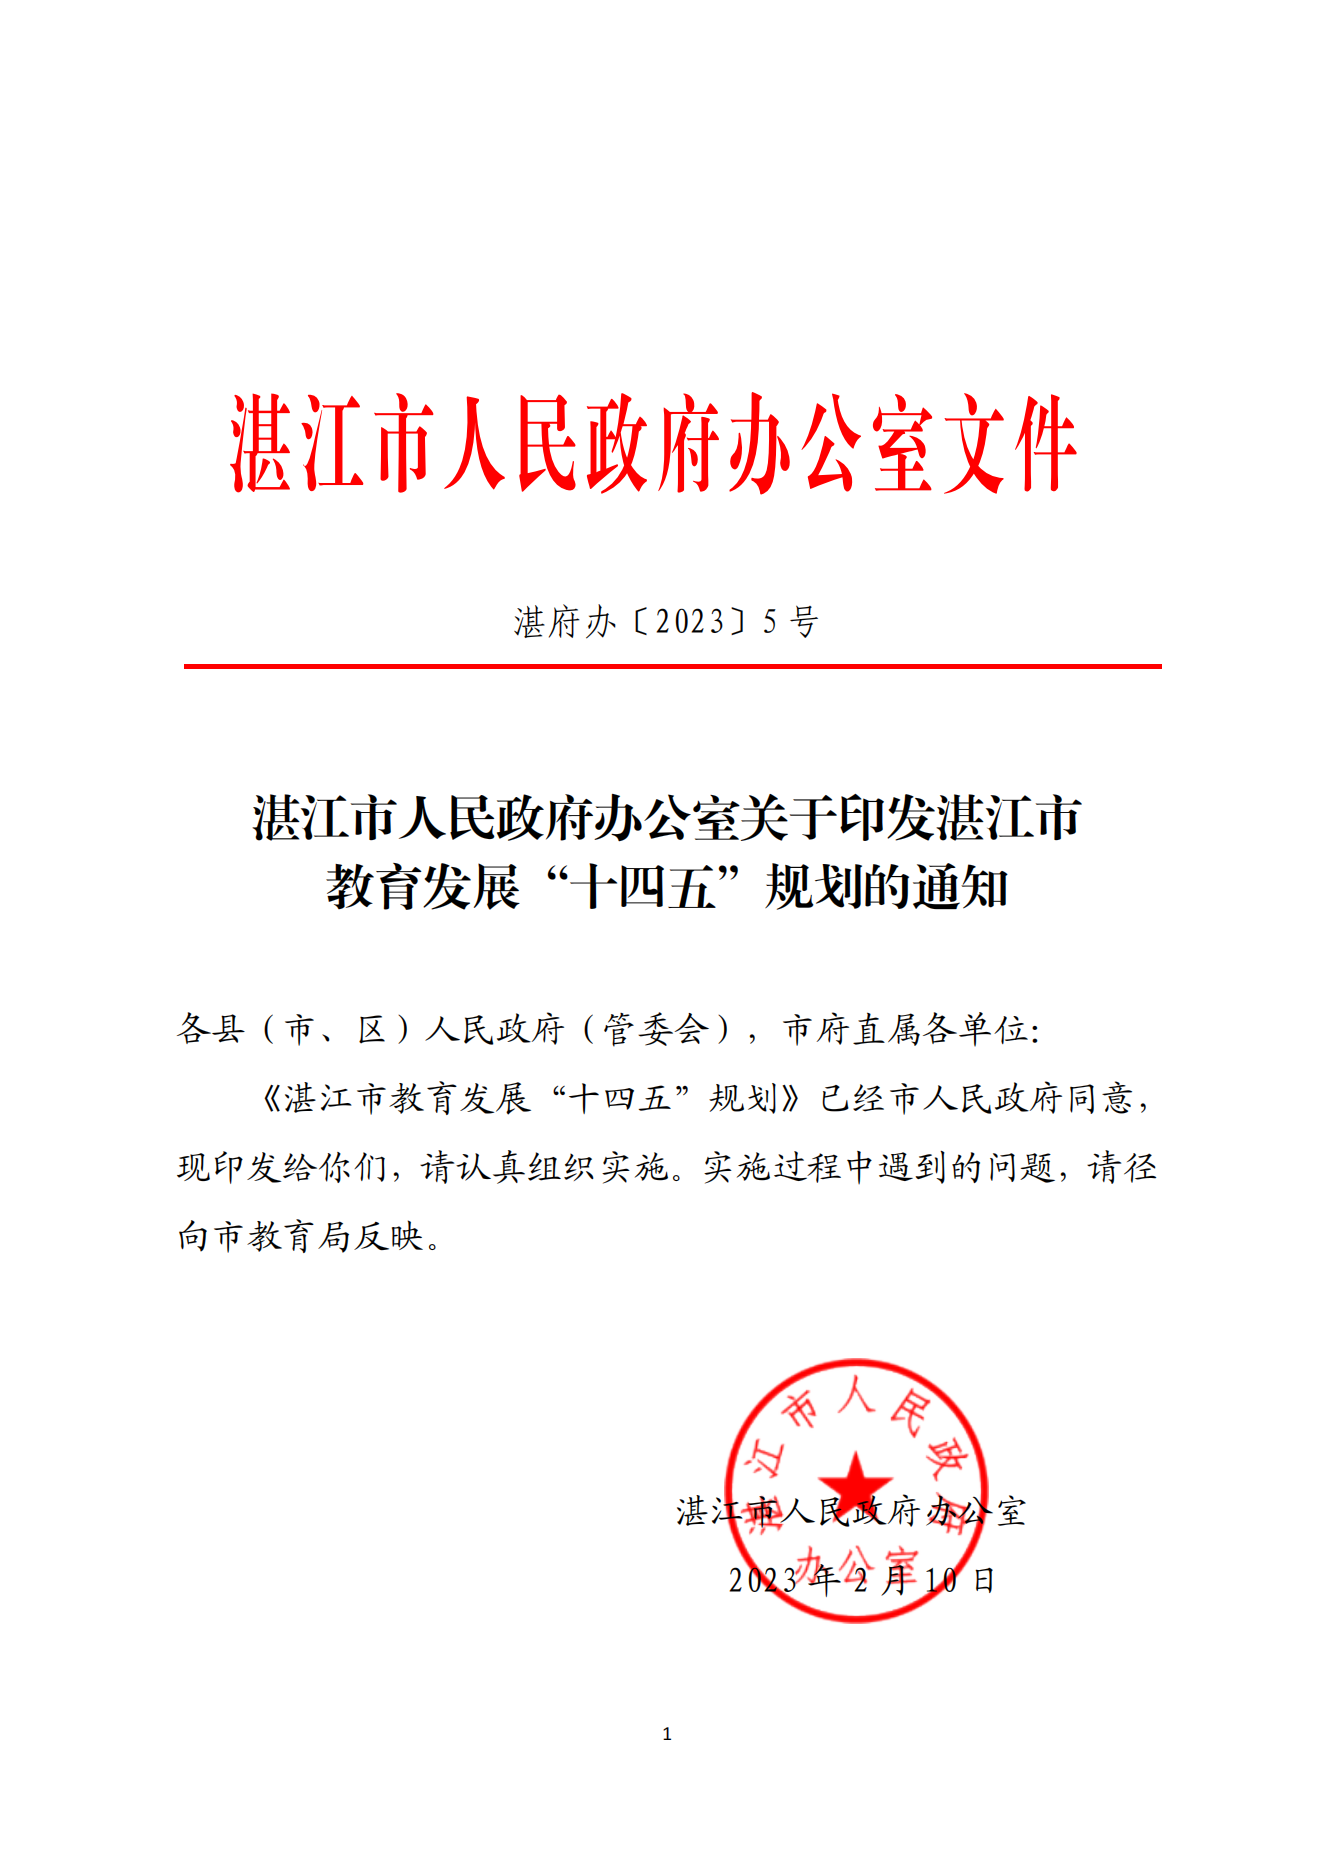 湛江市人民政府办公室关于印发湛江市教育发展“十四五”规划的通知_00.png